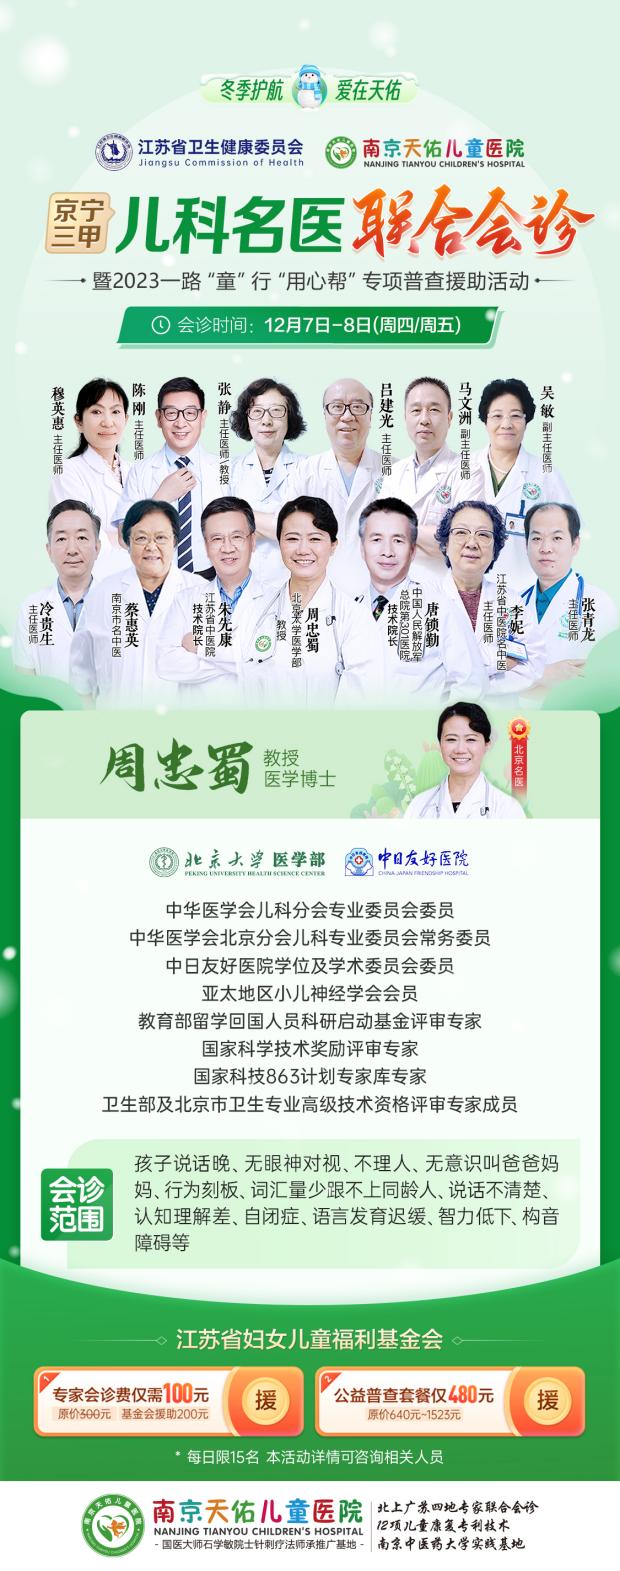 京宁三甲儿科专家齐聚南京天佑儿童医院于12月7-8日会诊，帮助患儿康复